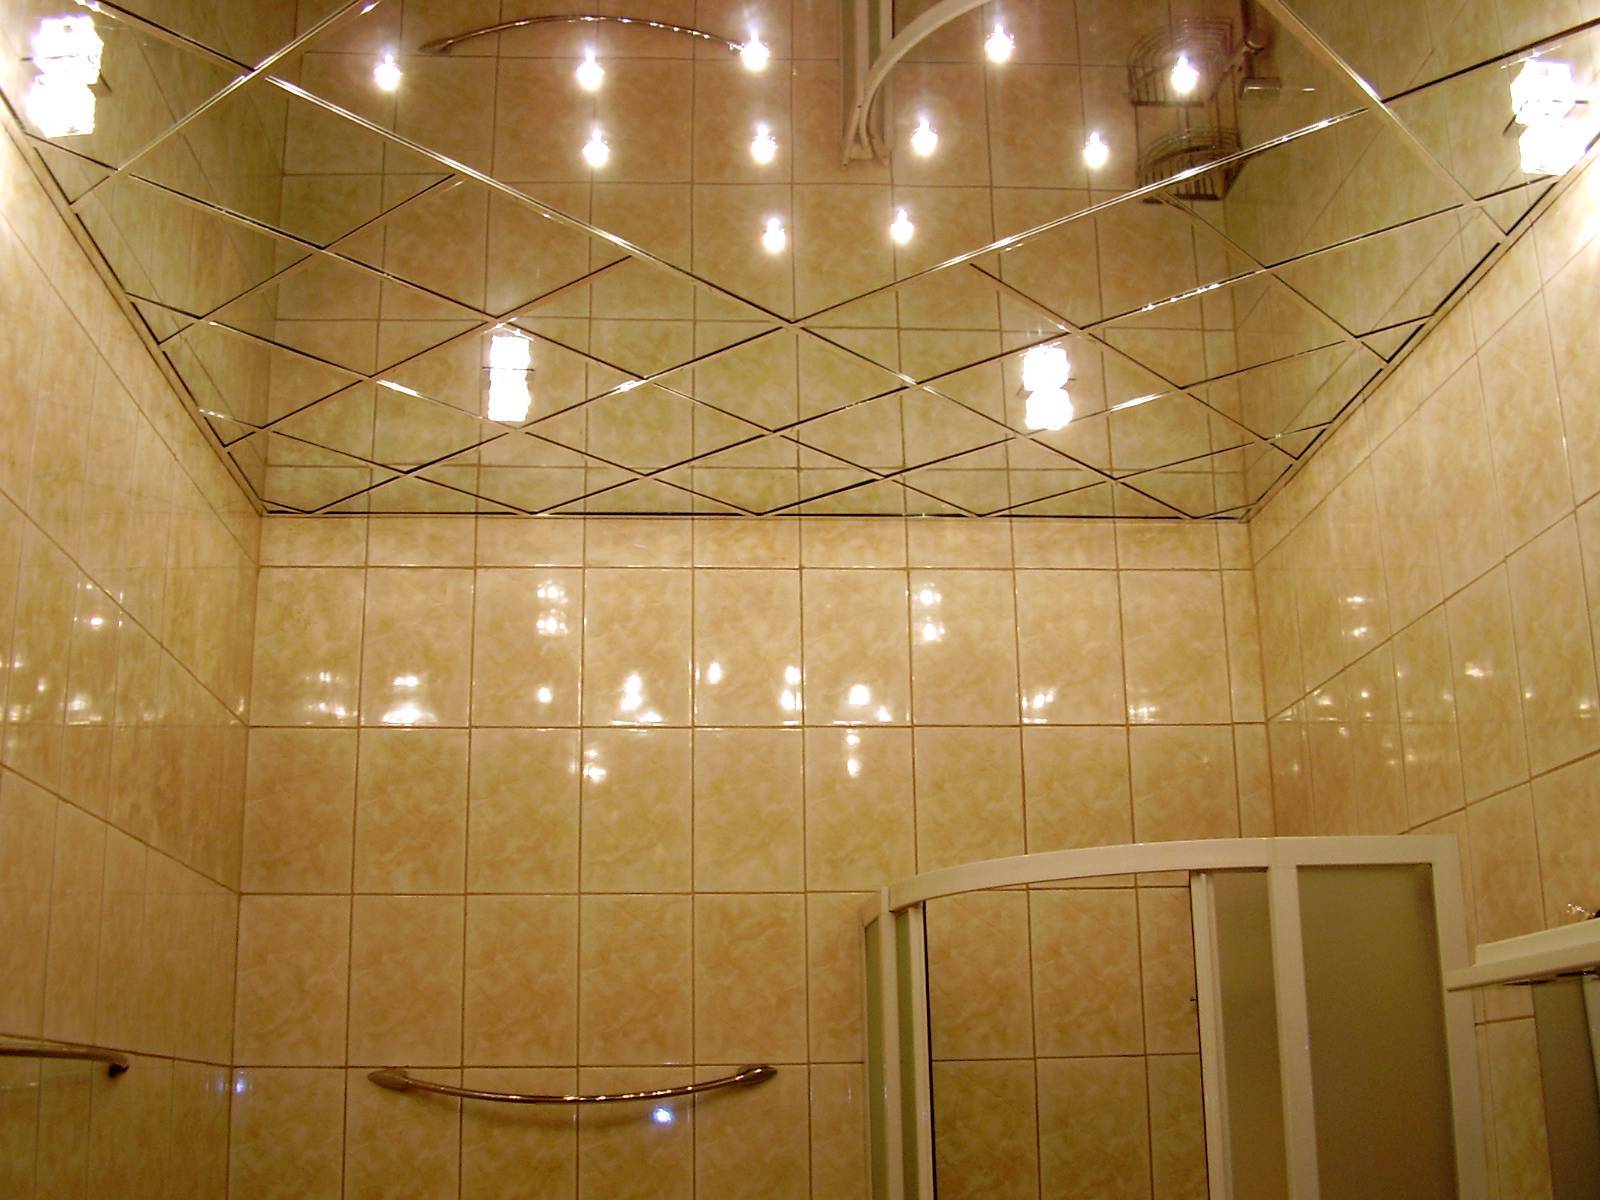 Какой потолок лучше сделать в ванной комнате: натяжной, реечный, подвесной?